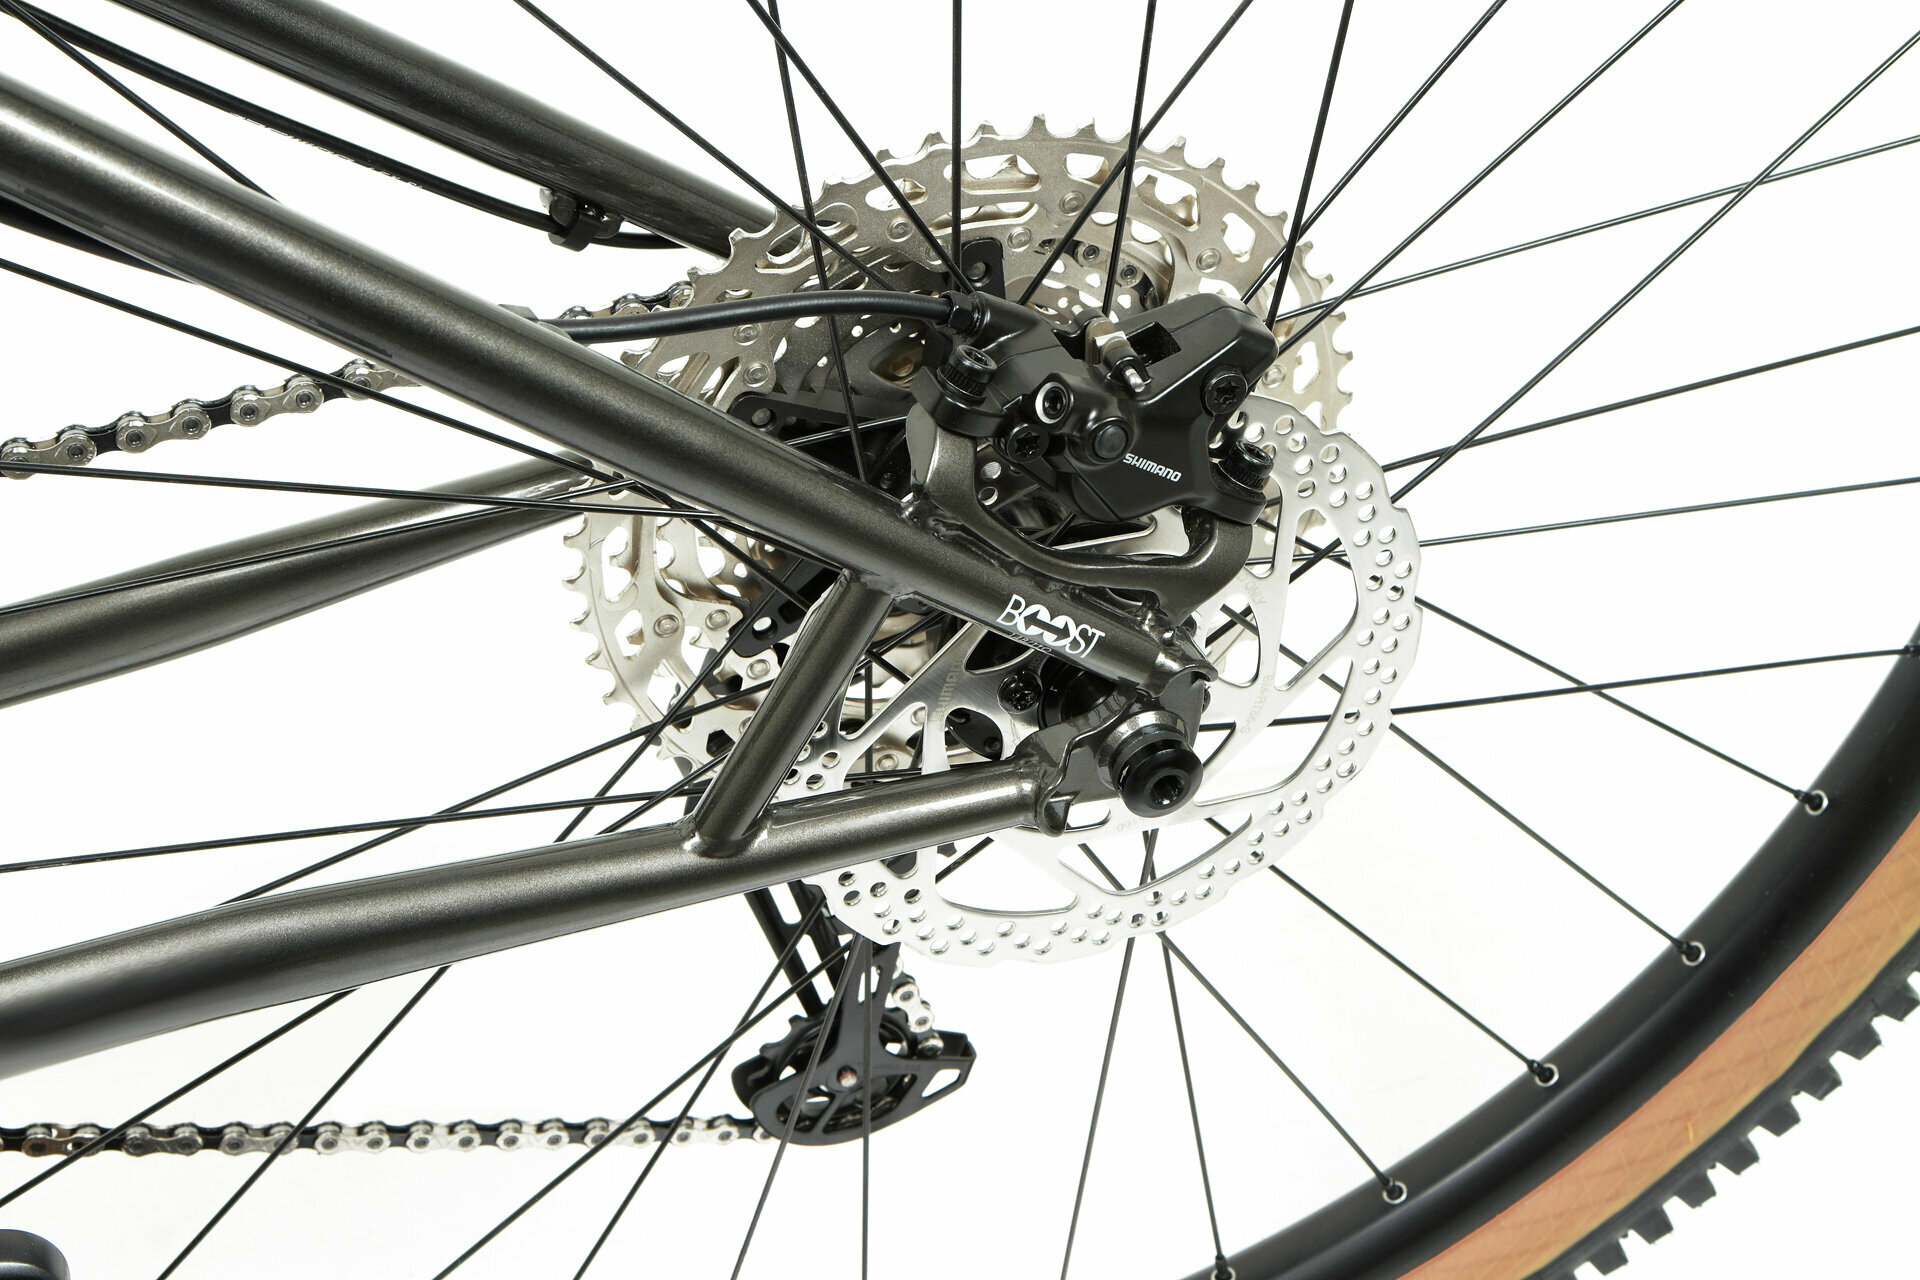 Велосипед FORMAT 1322 29 (29" 11 ск. рост. M) 2023, темно-серый/коричневый